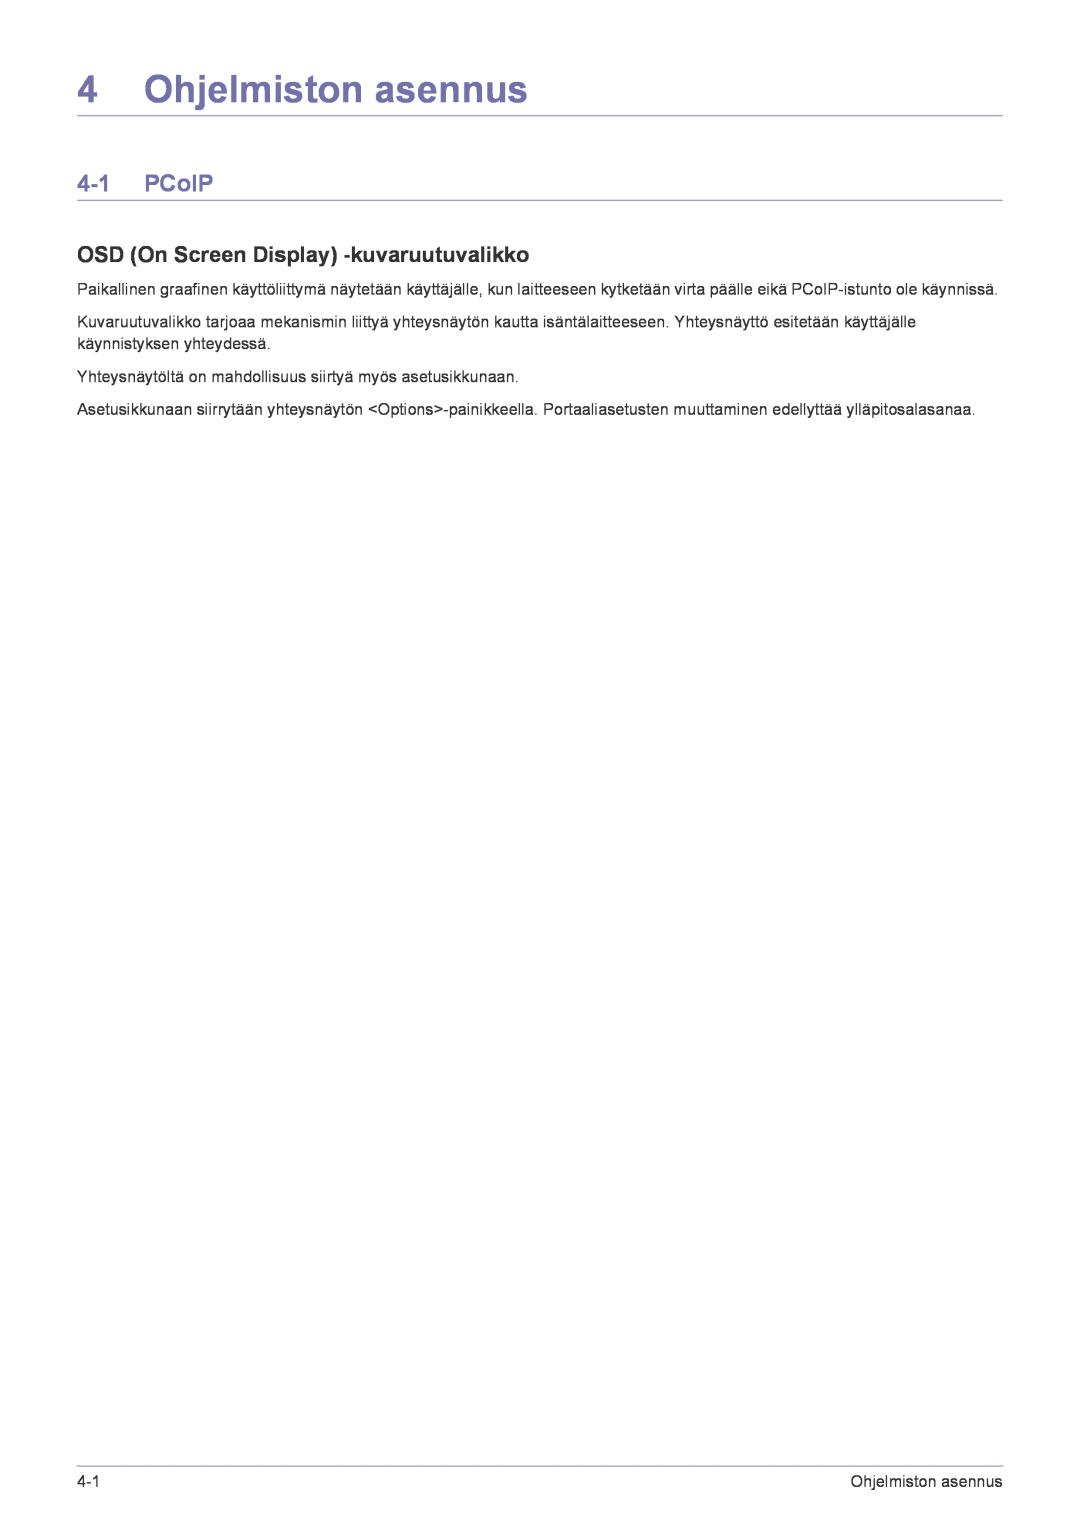 Samsung LF22NPBHBNP/EN manual Ohjelmiston asennus, PCoIP, OSD On Screen Display -kuvaruutuvalikko 